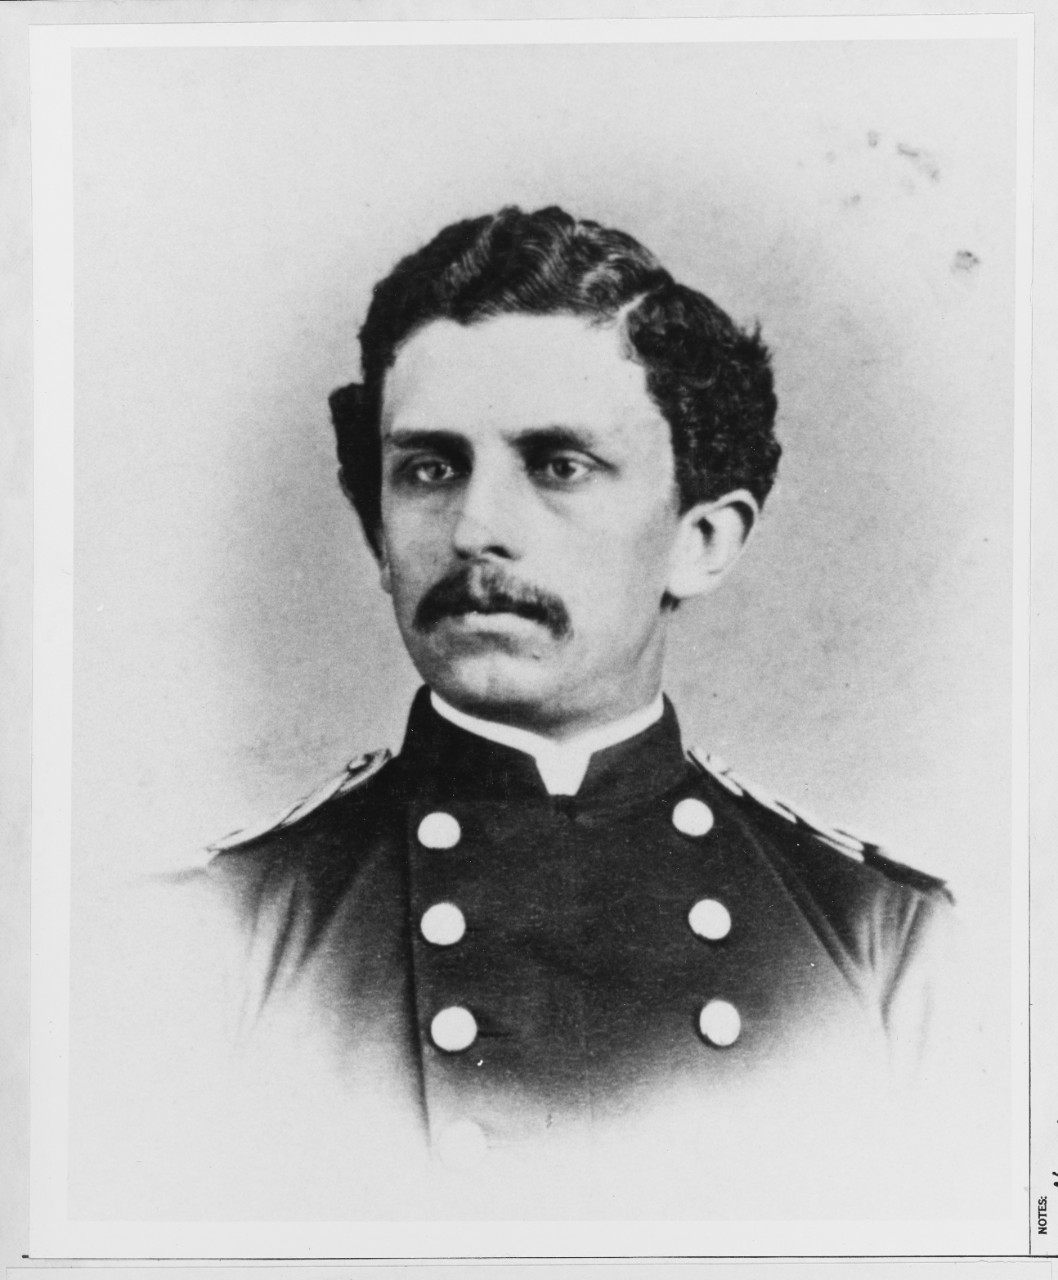 First Lieutenant Samuel C. Adams, USMC